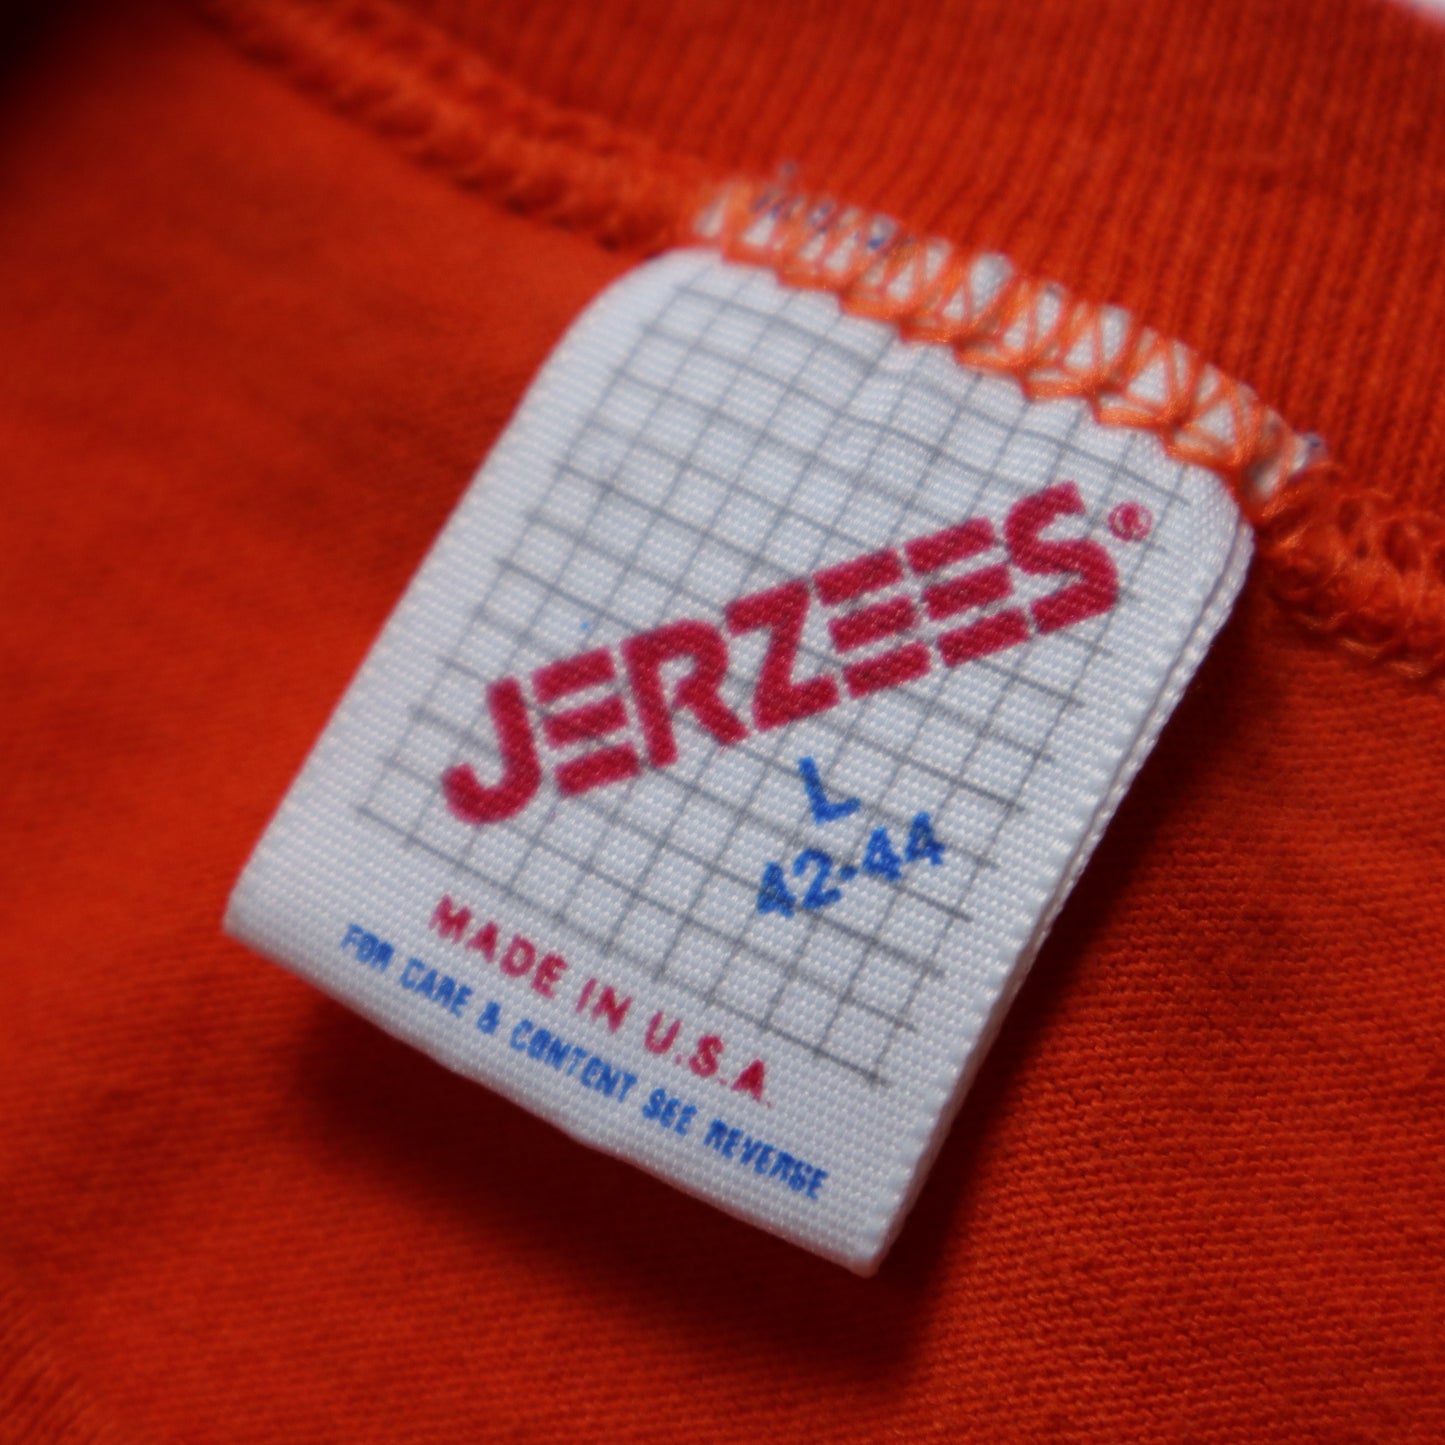 1980年代 アメリカ製 JERZEES Golden Gate Tシャツ